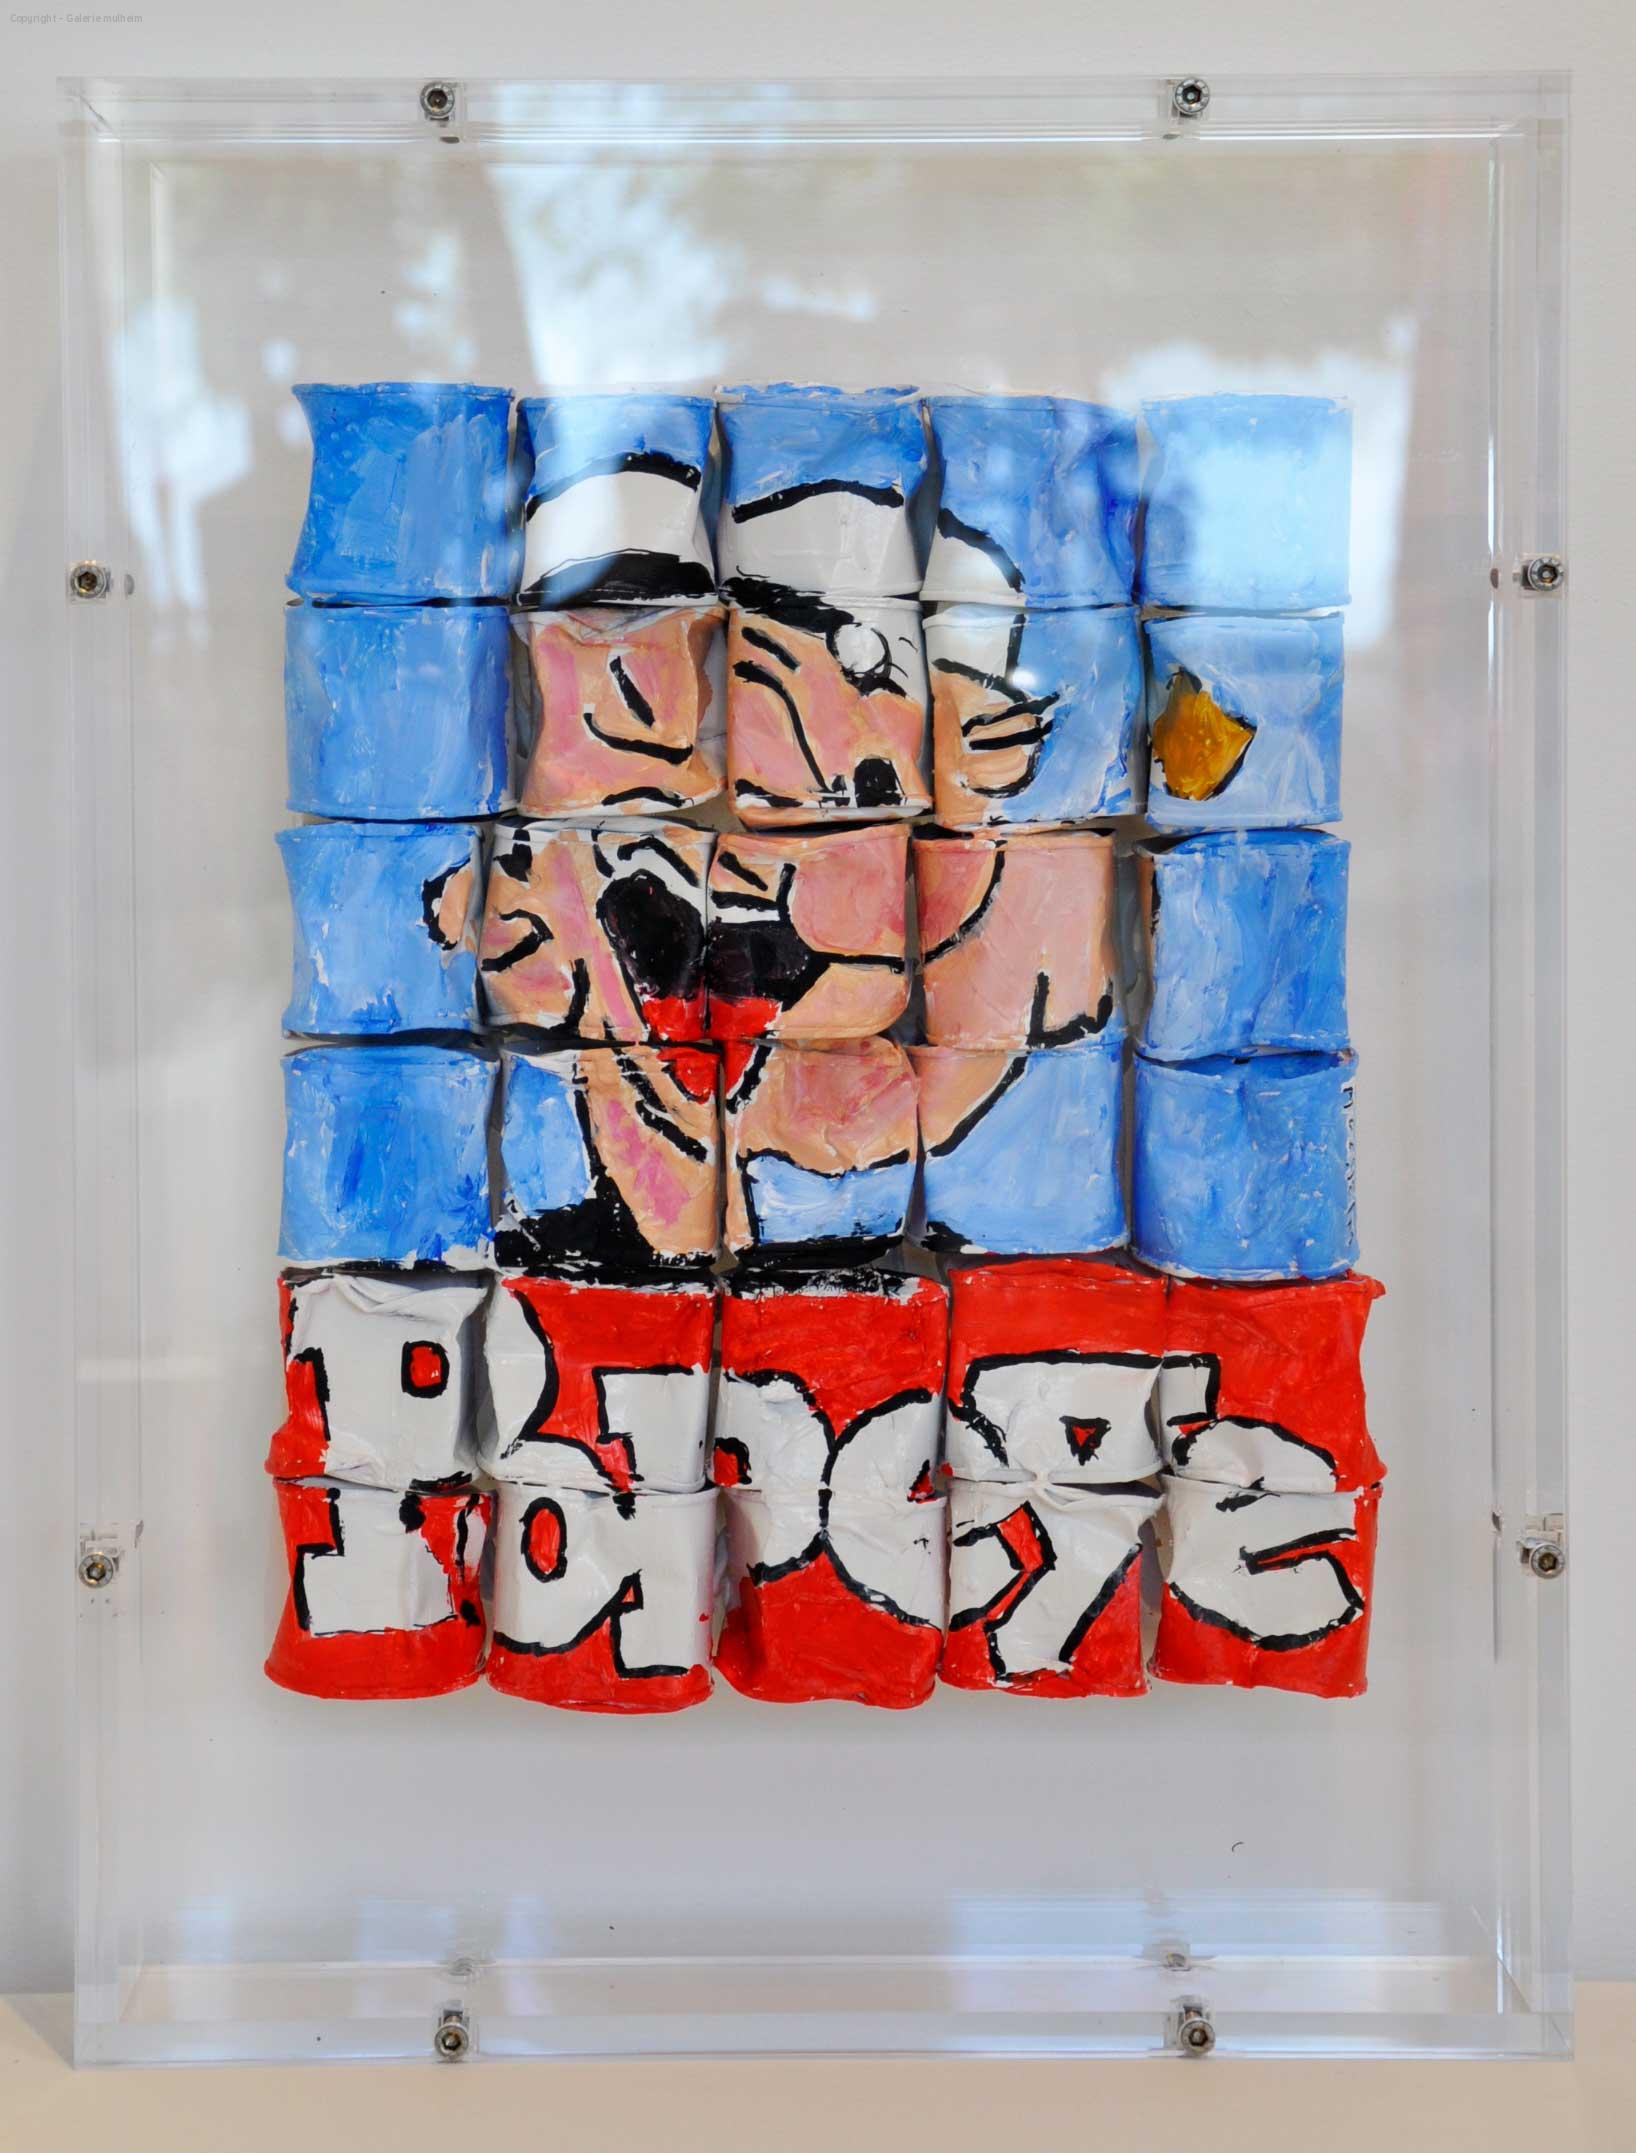 Popeye - Oeuvre sur petite boite de conserves fermé dans boite en plexi - H 49 cm x L 37 cm